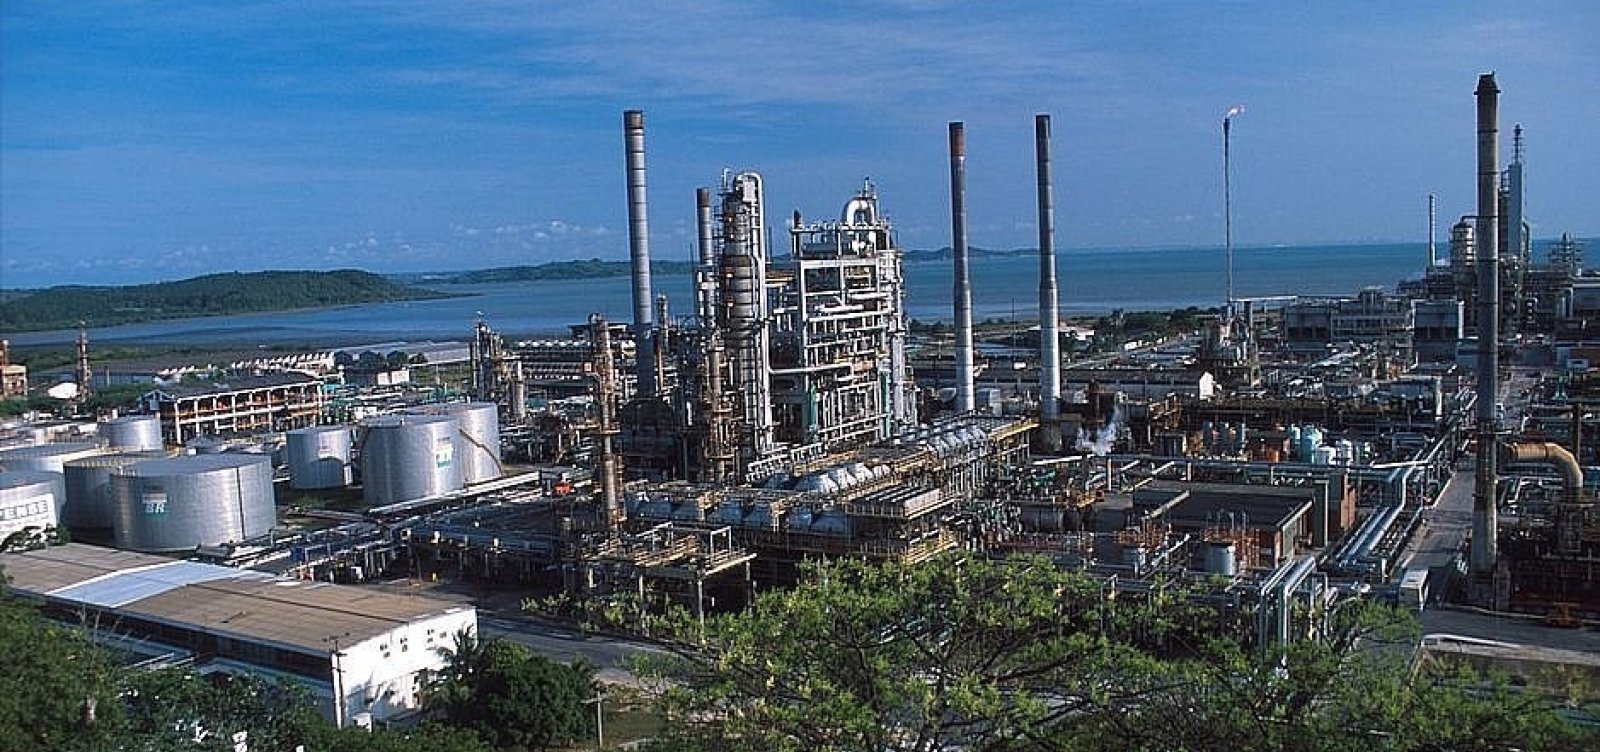 Petrobras conclui fase de negociação em processo de venda da Refinaria Landulpho Alves